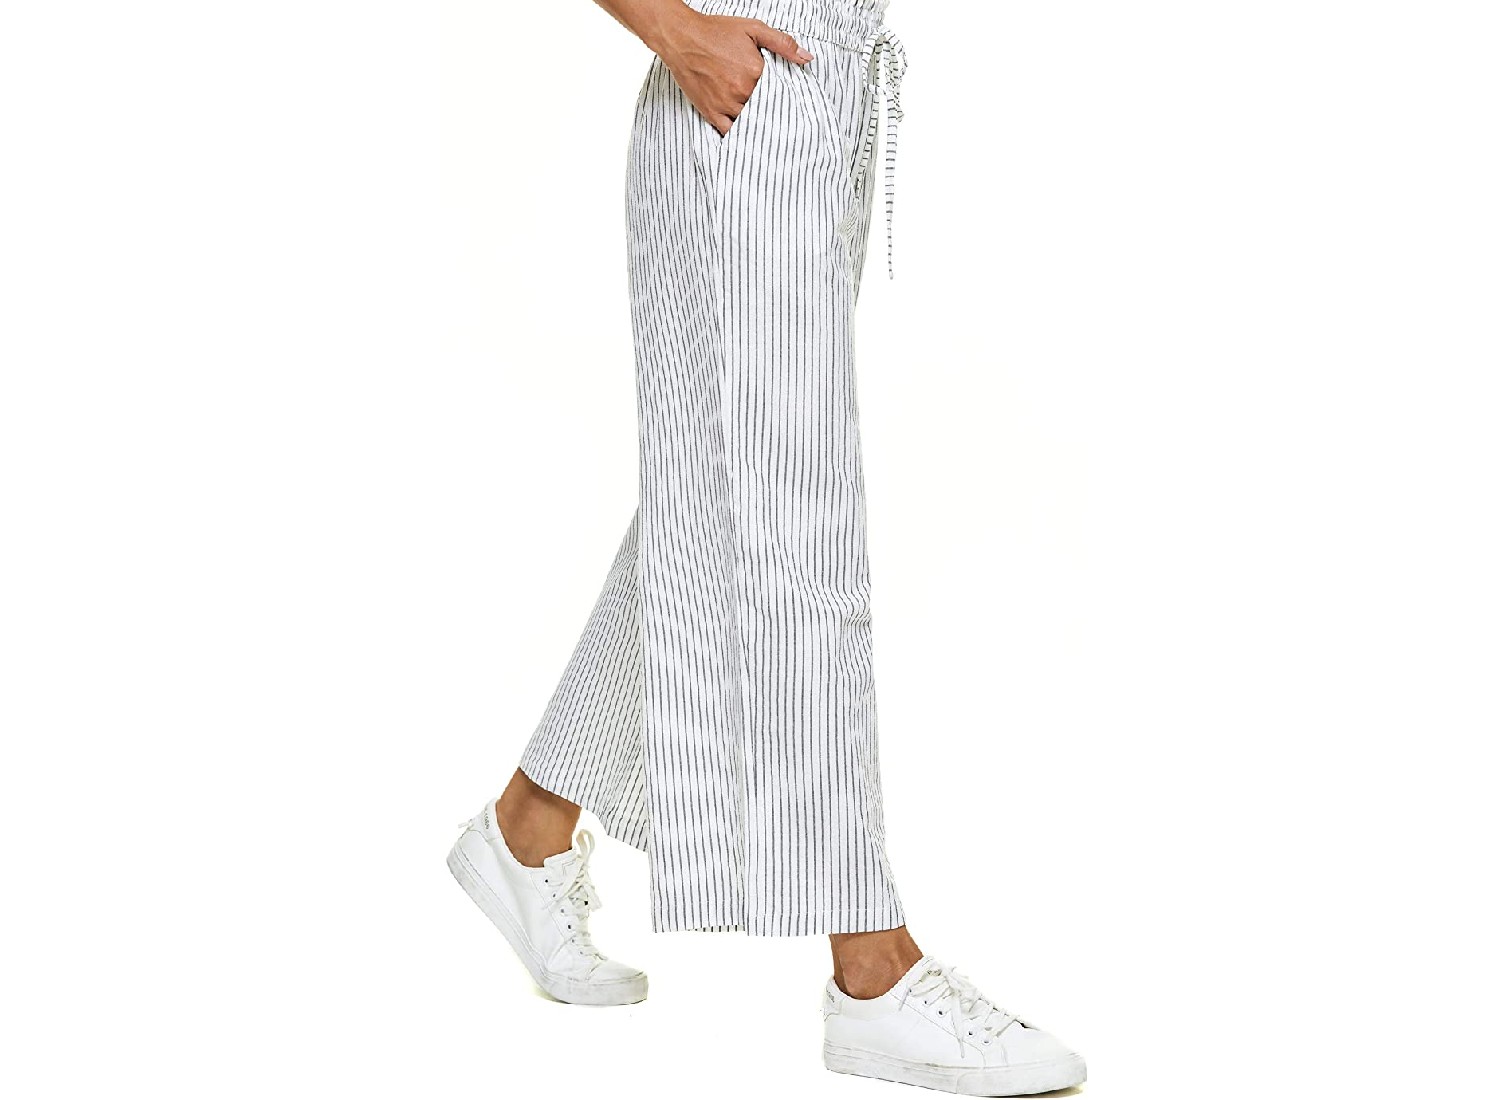 A model wearing striped linen pants.